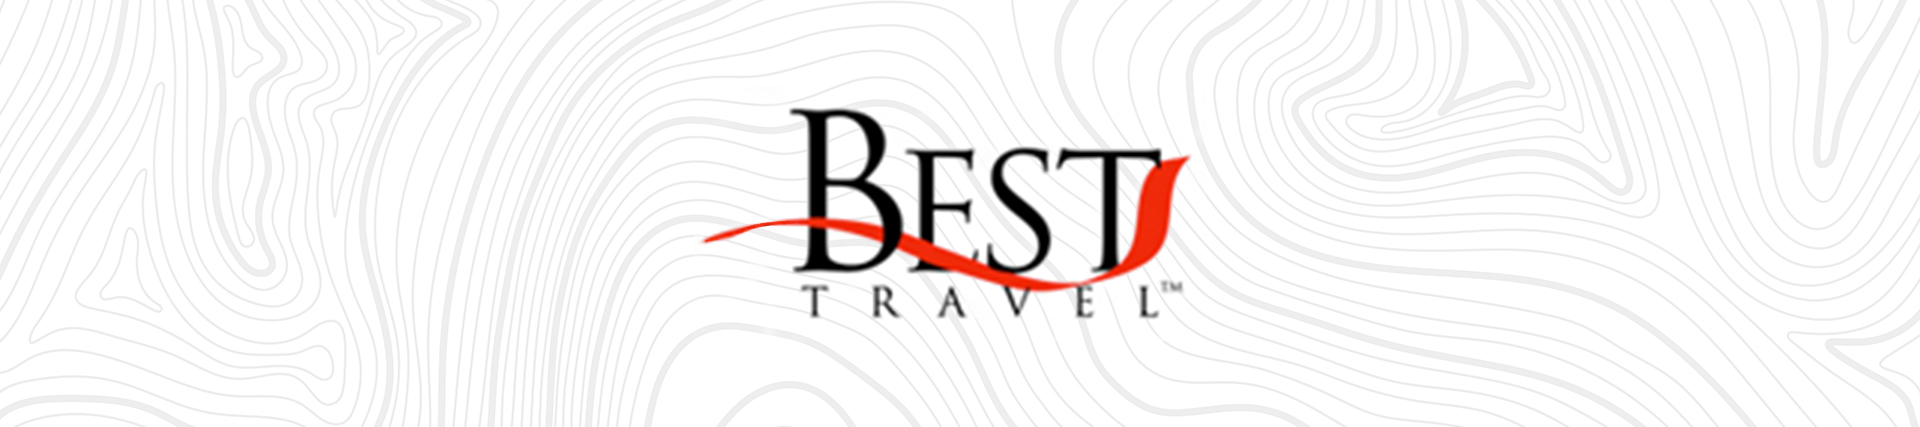 Direct Travel, Inc. Announces Acquisition of Best Travel & Tours, Inc.